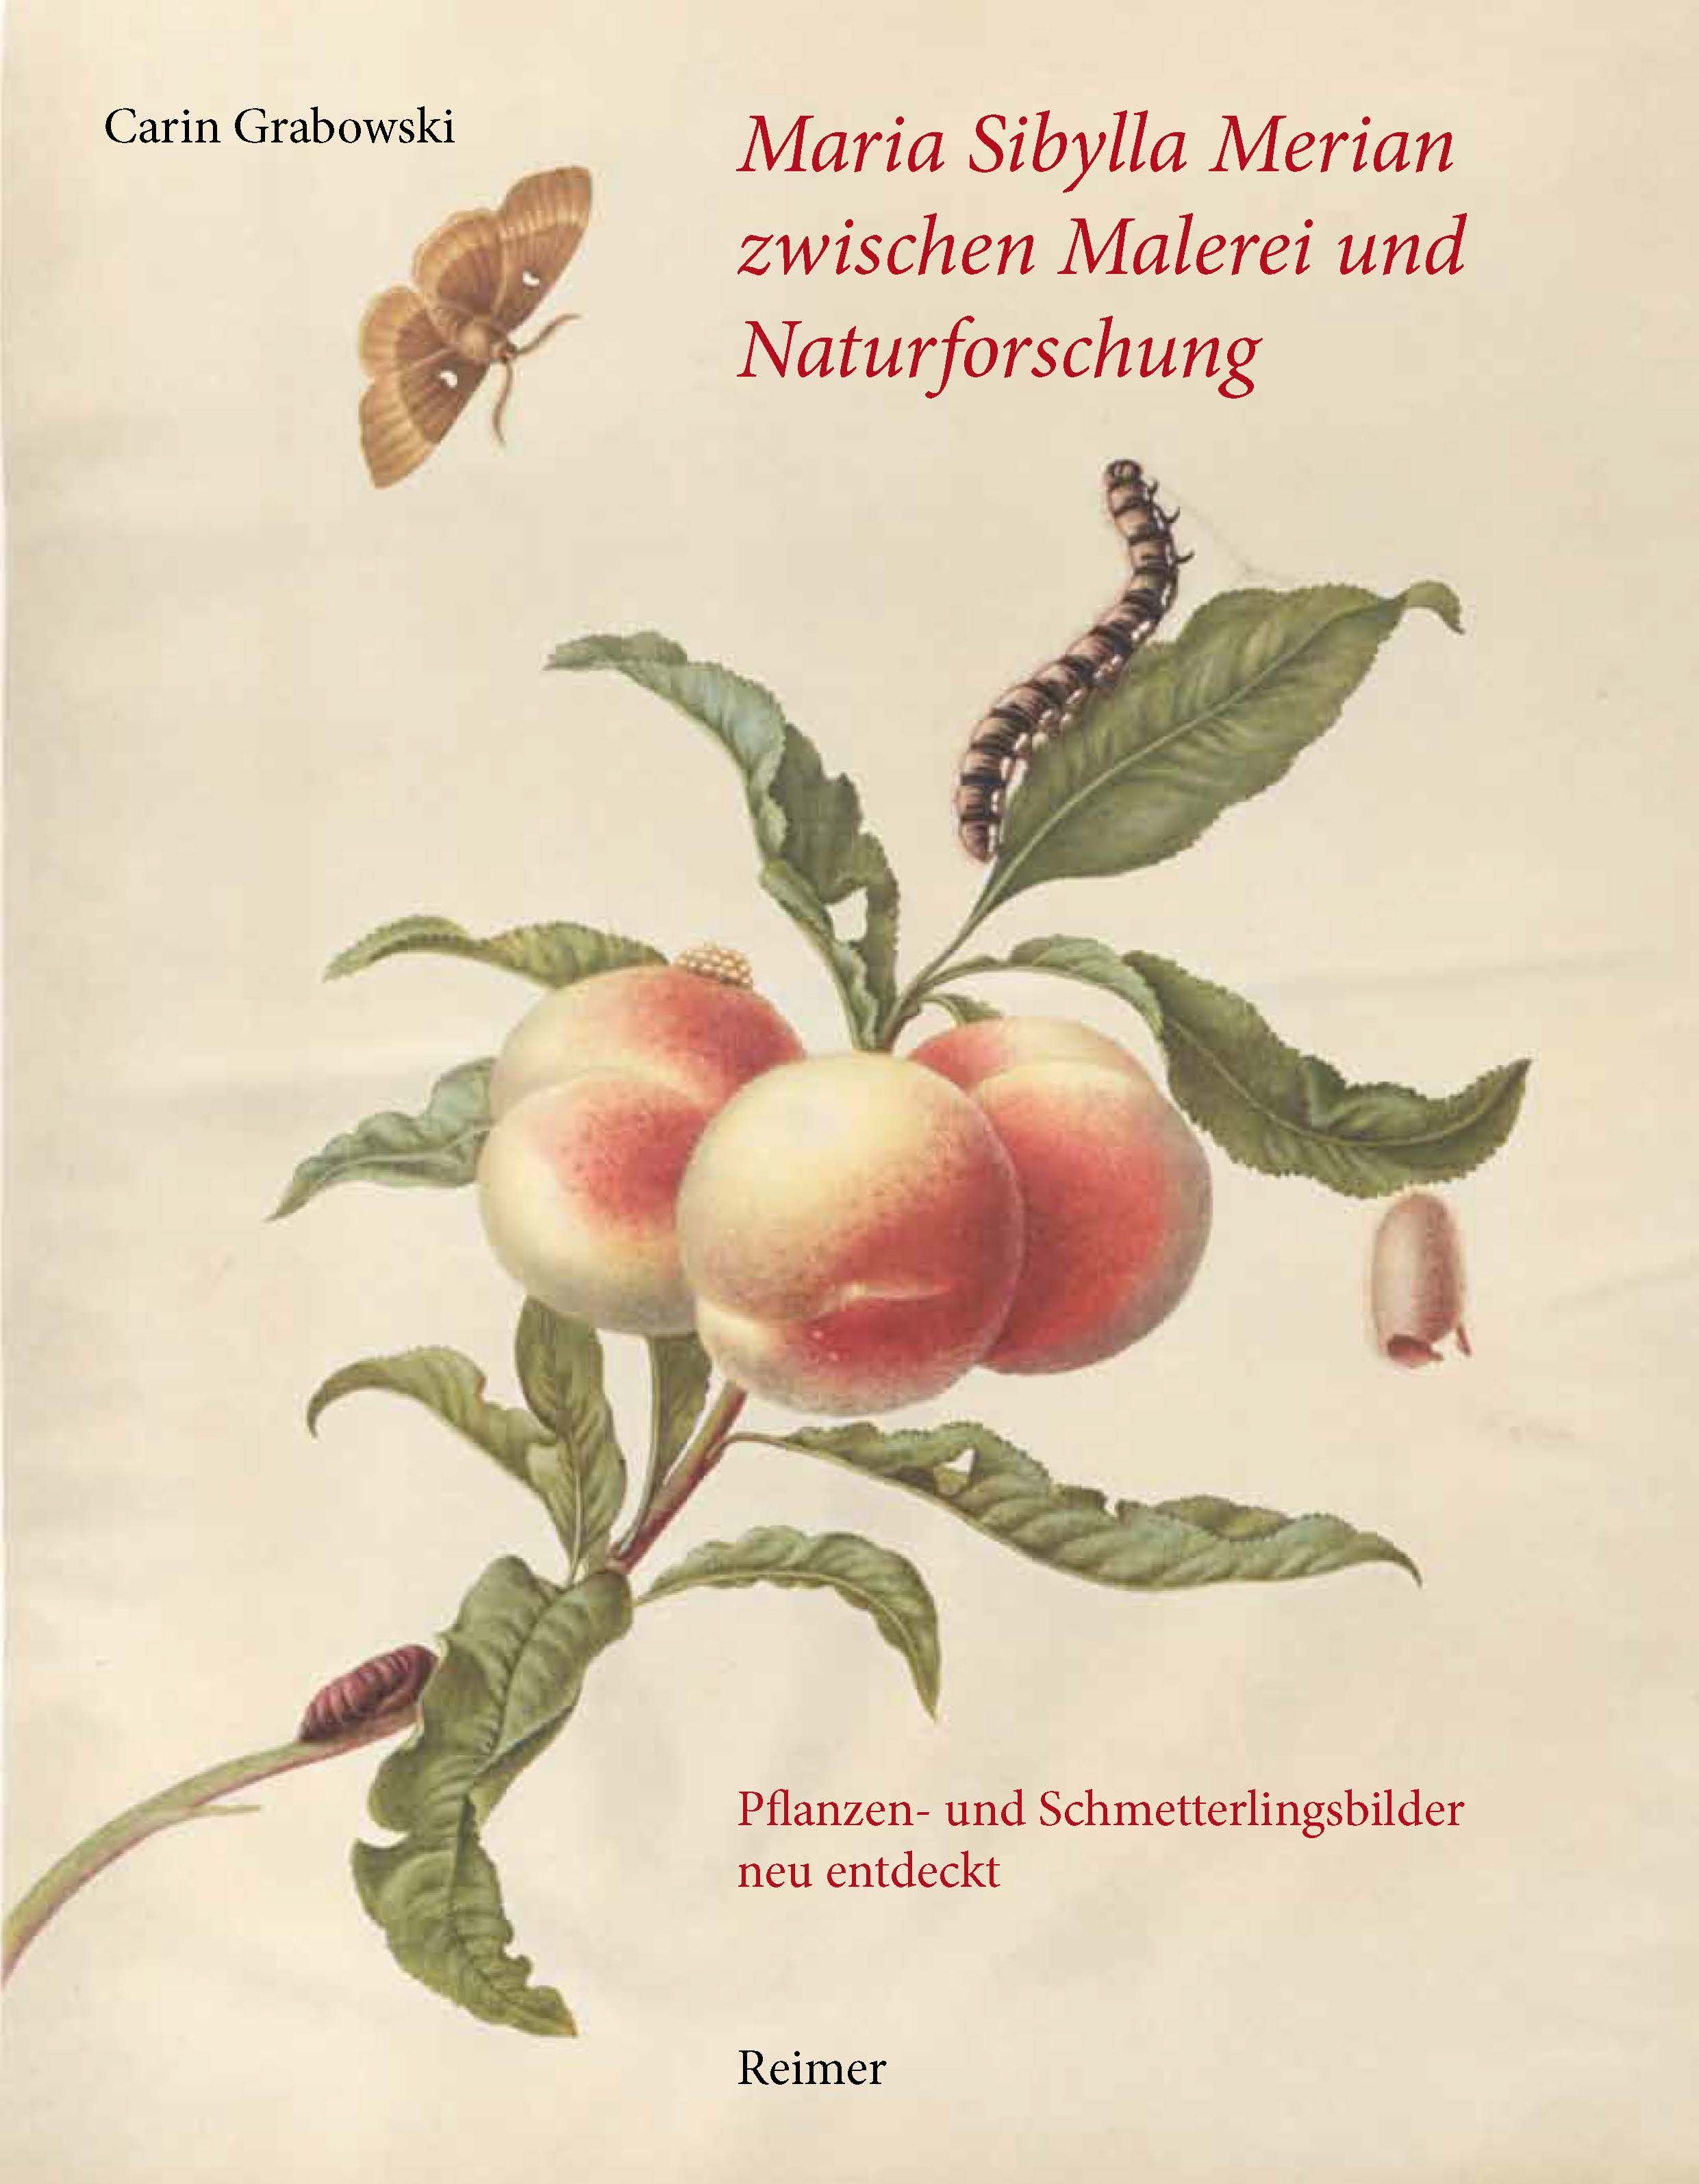 Carin Grabowski / Maria Sibylla Merian zwischen Malerei und Naturforschung - Bild 1 von 1